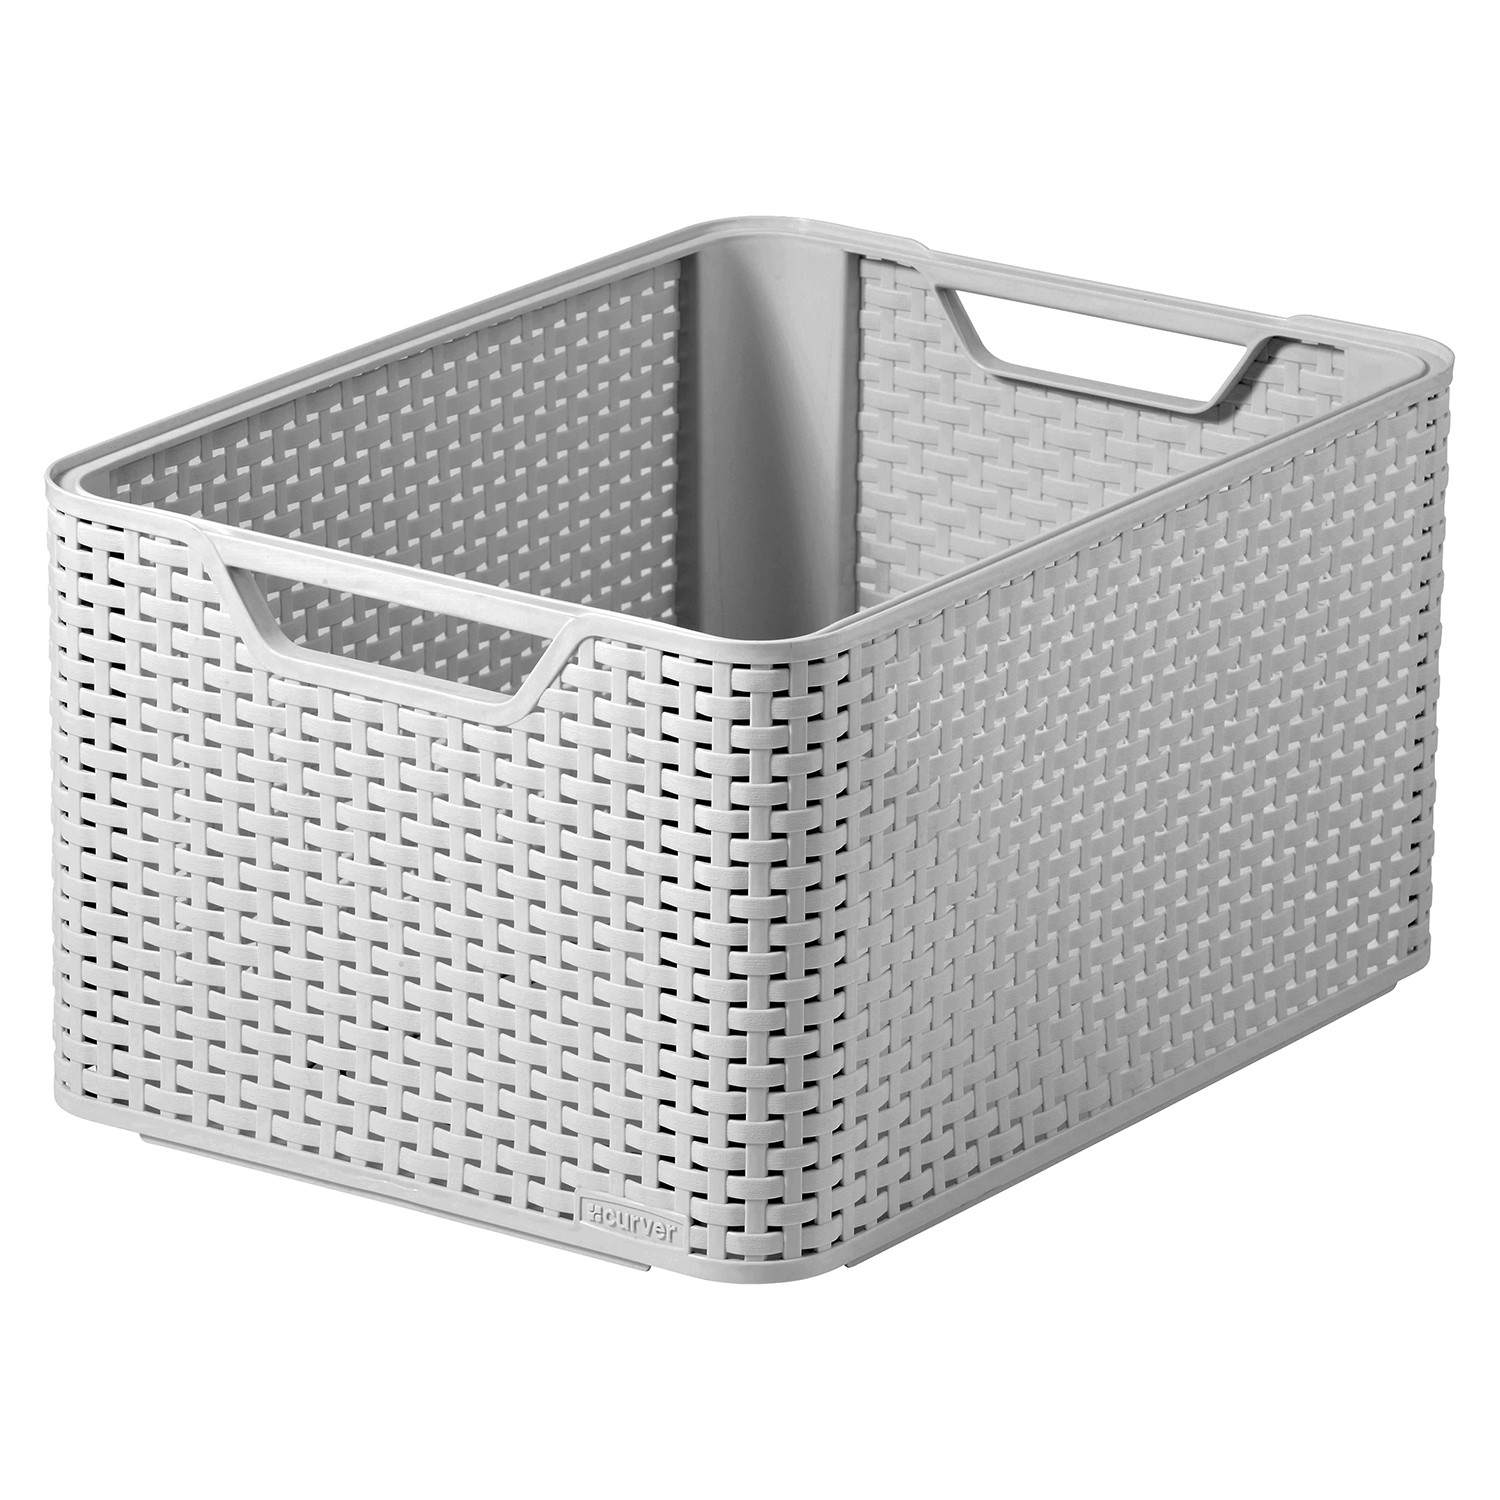 Curver Grey Storage Basket 30L Image